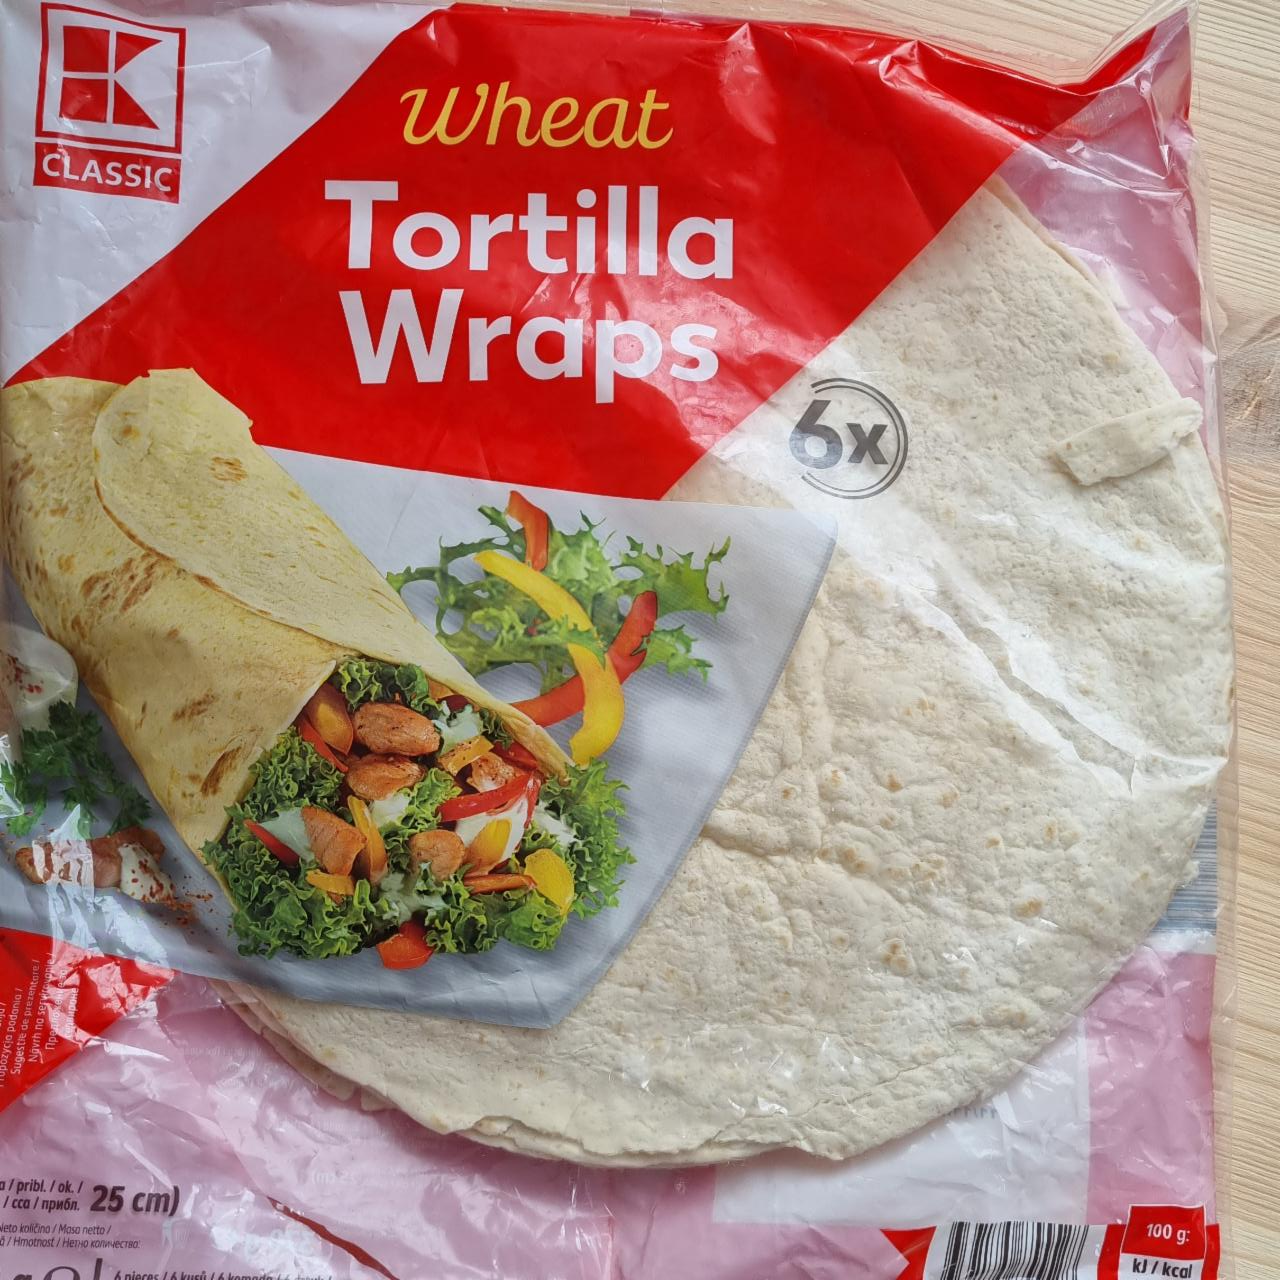 Фото - Wheat Tortilla Wraps (Тортилла) K-Classic